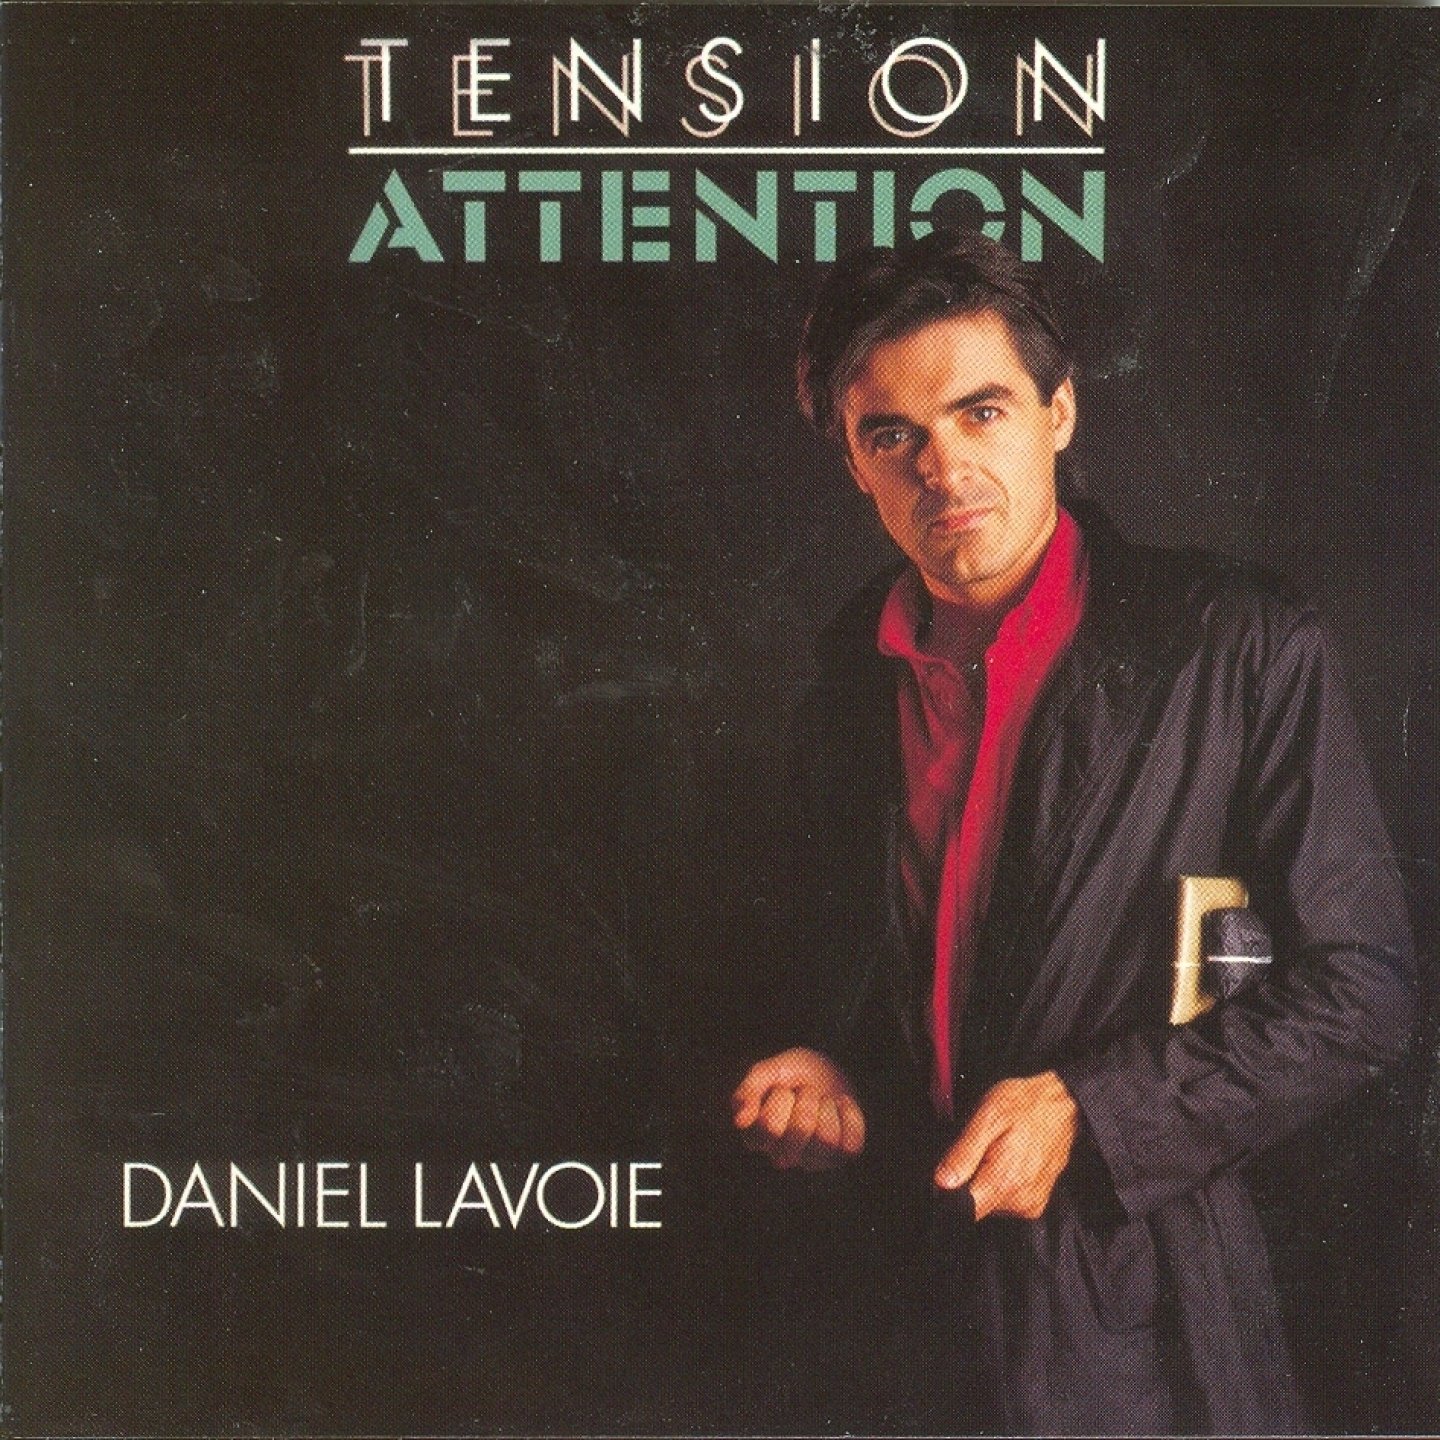 Daniel Lavoie - Tension Attention (1983)